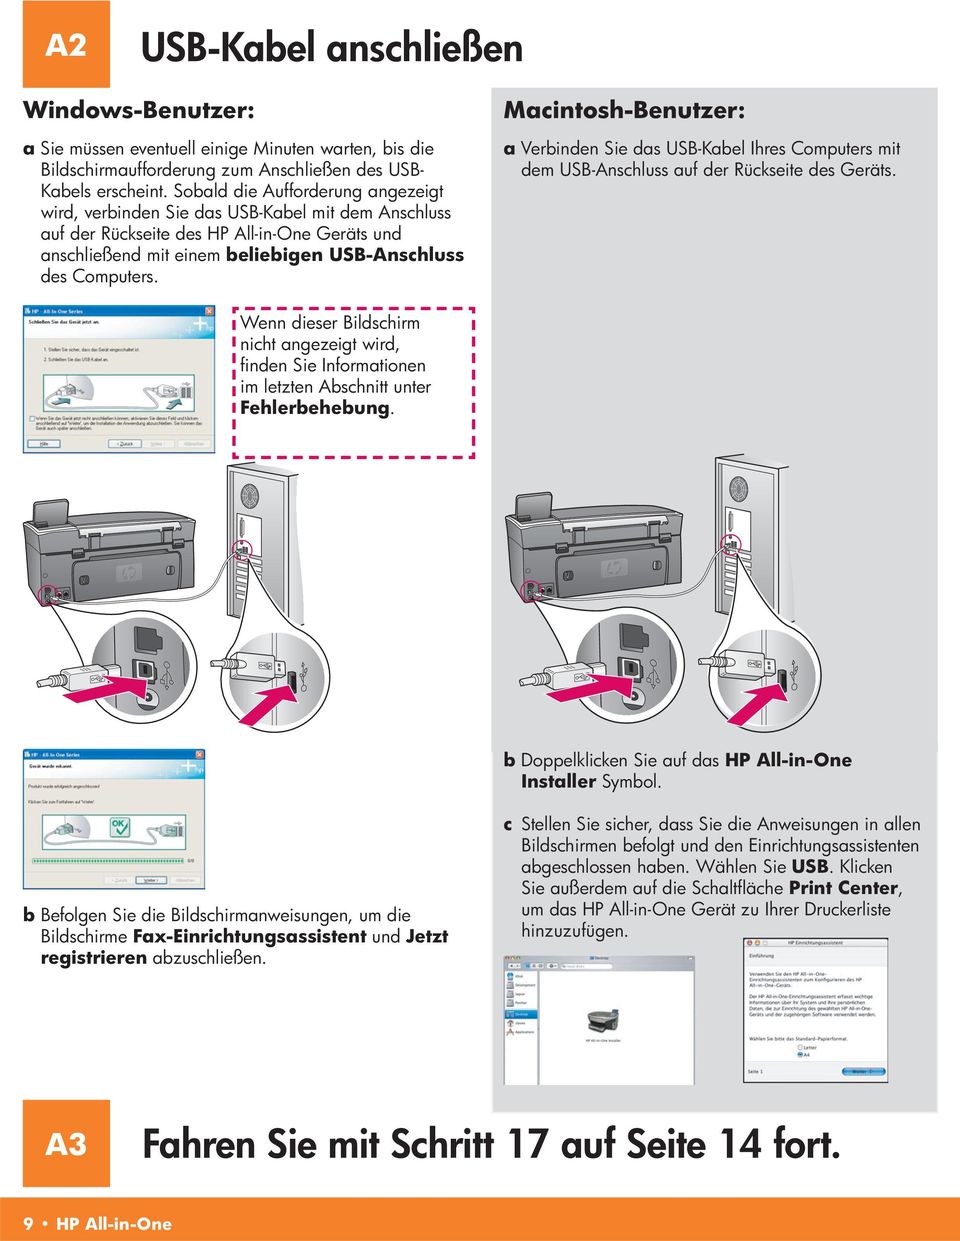 Macintosh-Benutzer: a Verbinden Sie das USB-Kabel Ihres Computers mit dem USB-Anschluss auf der Rückseite des Geräts.